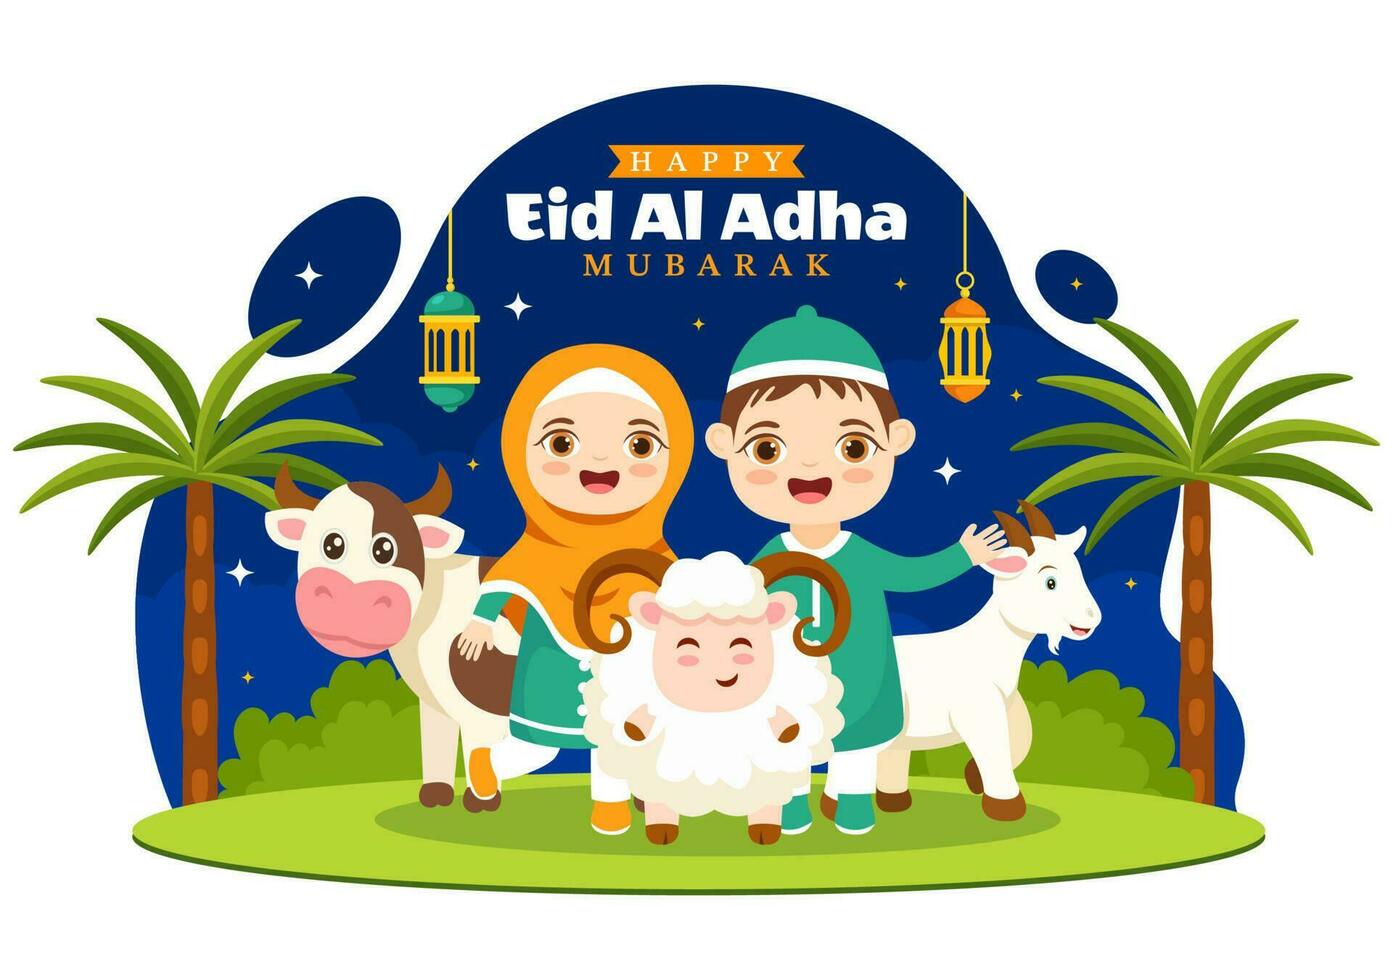 content eid Al adha mubarak vecteur illustration de des gamins les musulmans fête avec sacrificiel animaux chèvre et vache dans dessin animé main tiré modèles